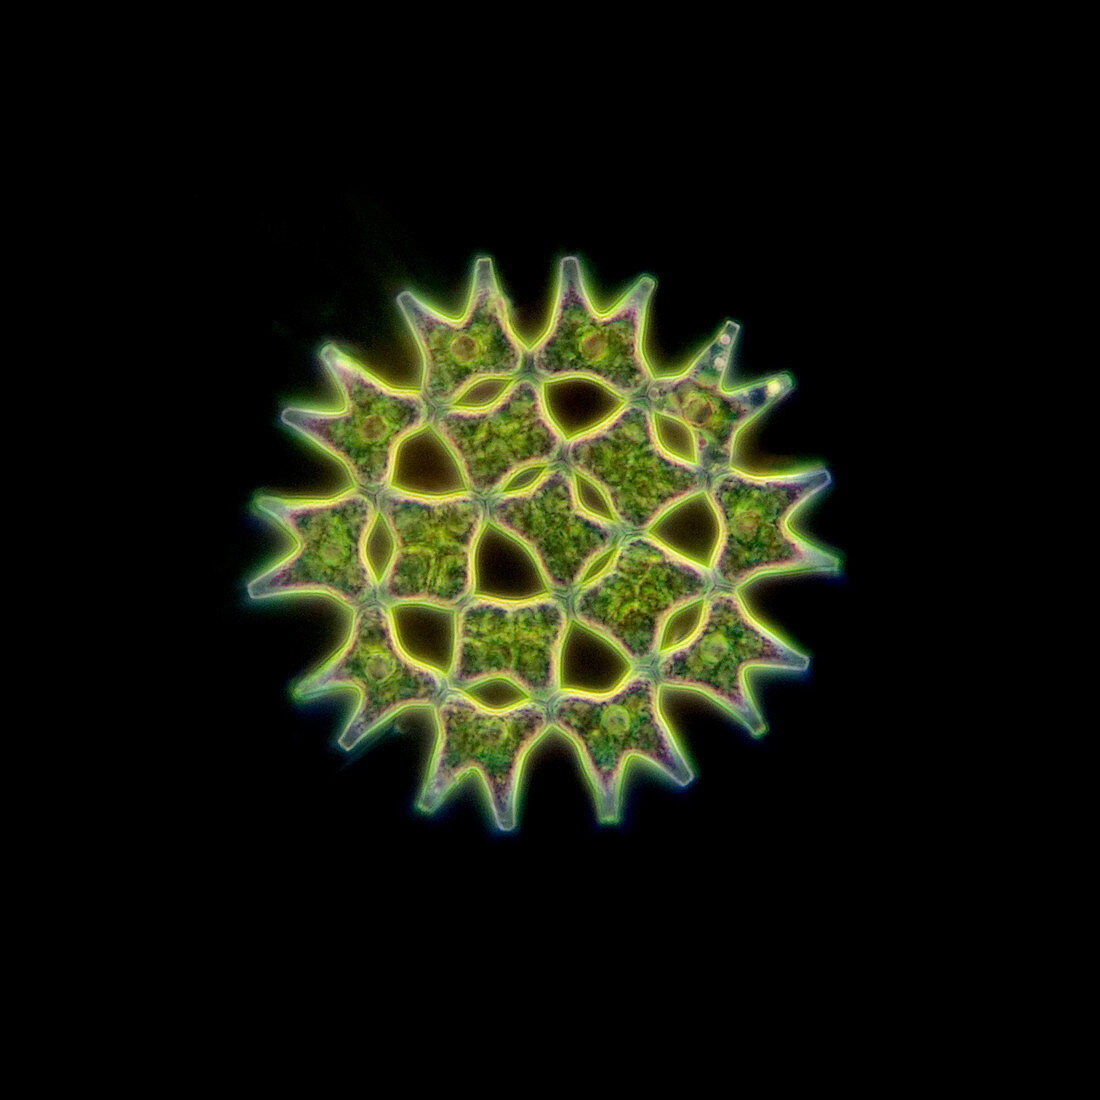 Pediastrum algae